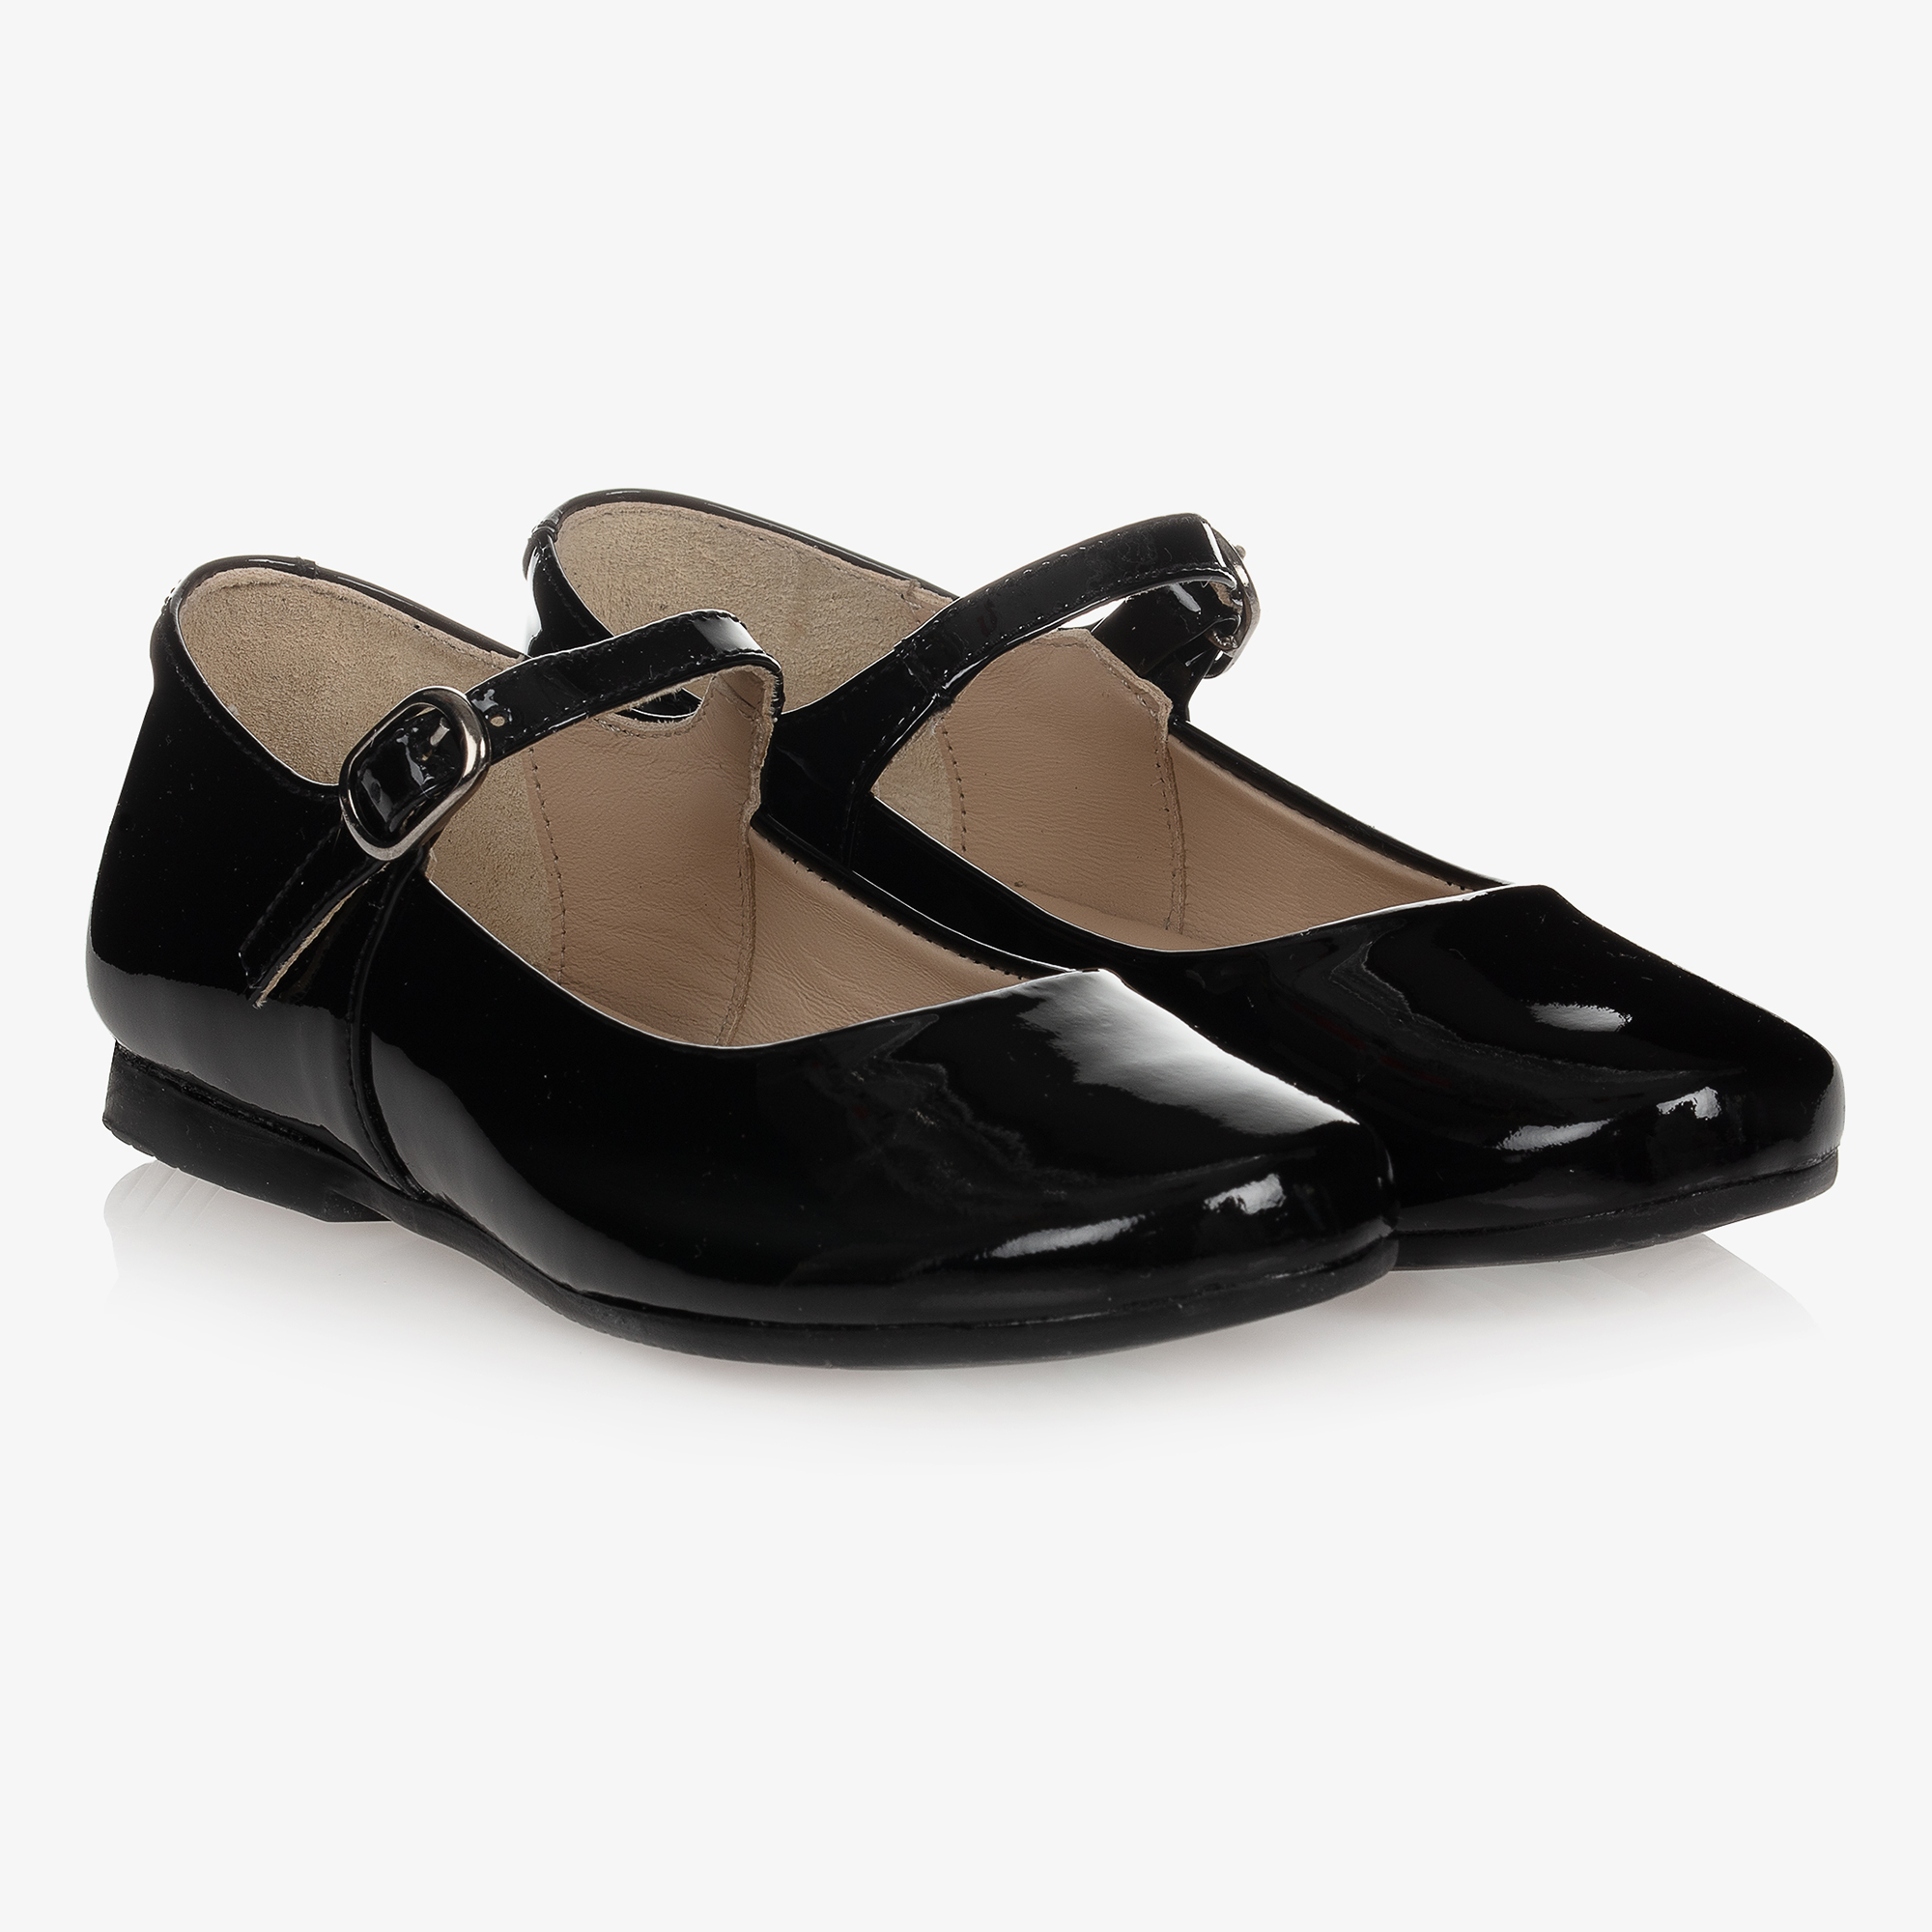 Manuela de Juan - Black Patent Leather Shoes